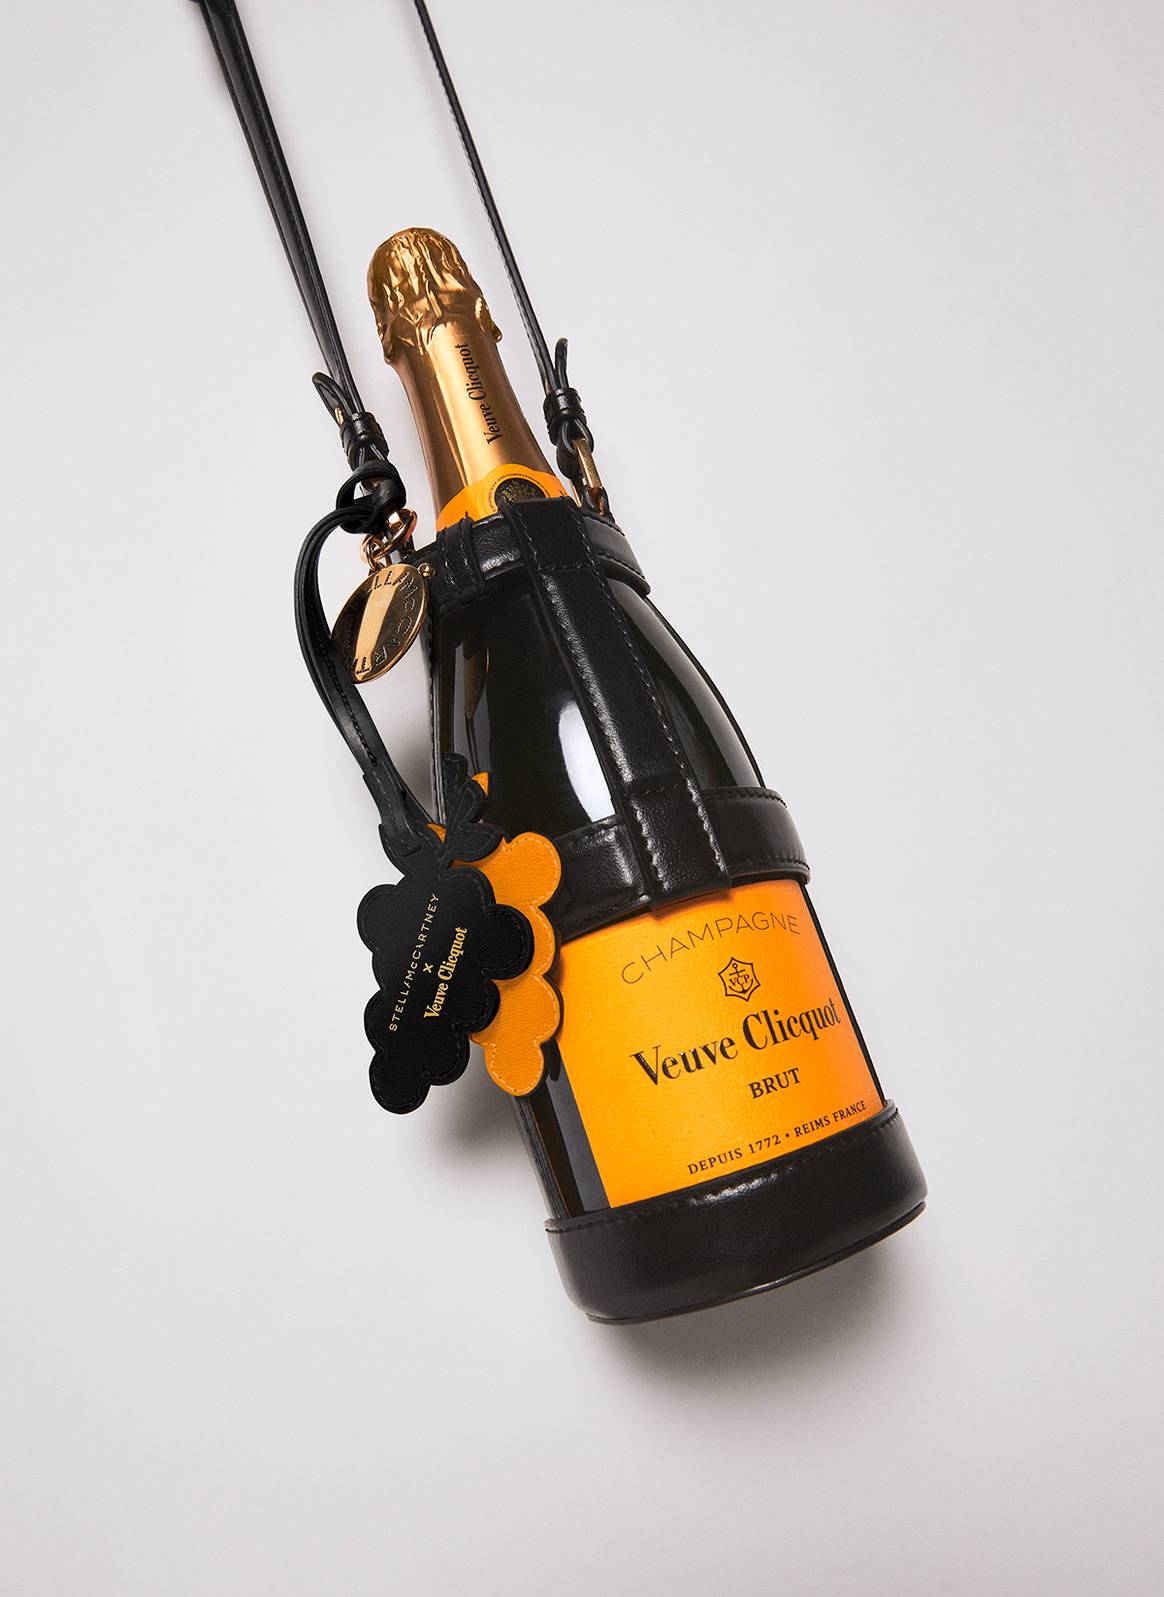 Diseño de Stella McCartney confeccionado en cuero de champán “Vegea”, desarrollado junto a las bodegas Veuve Clicquot.